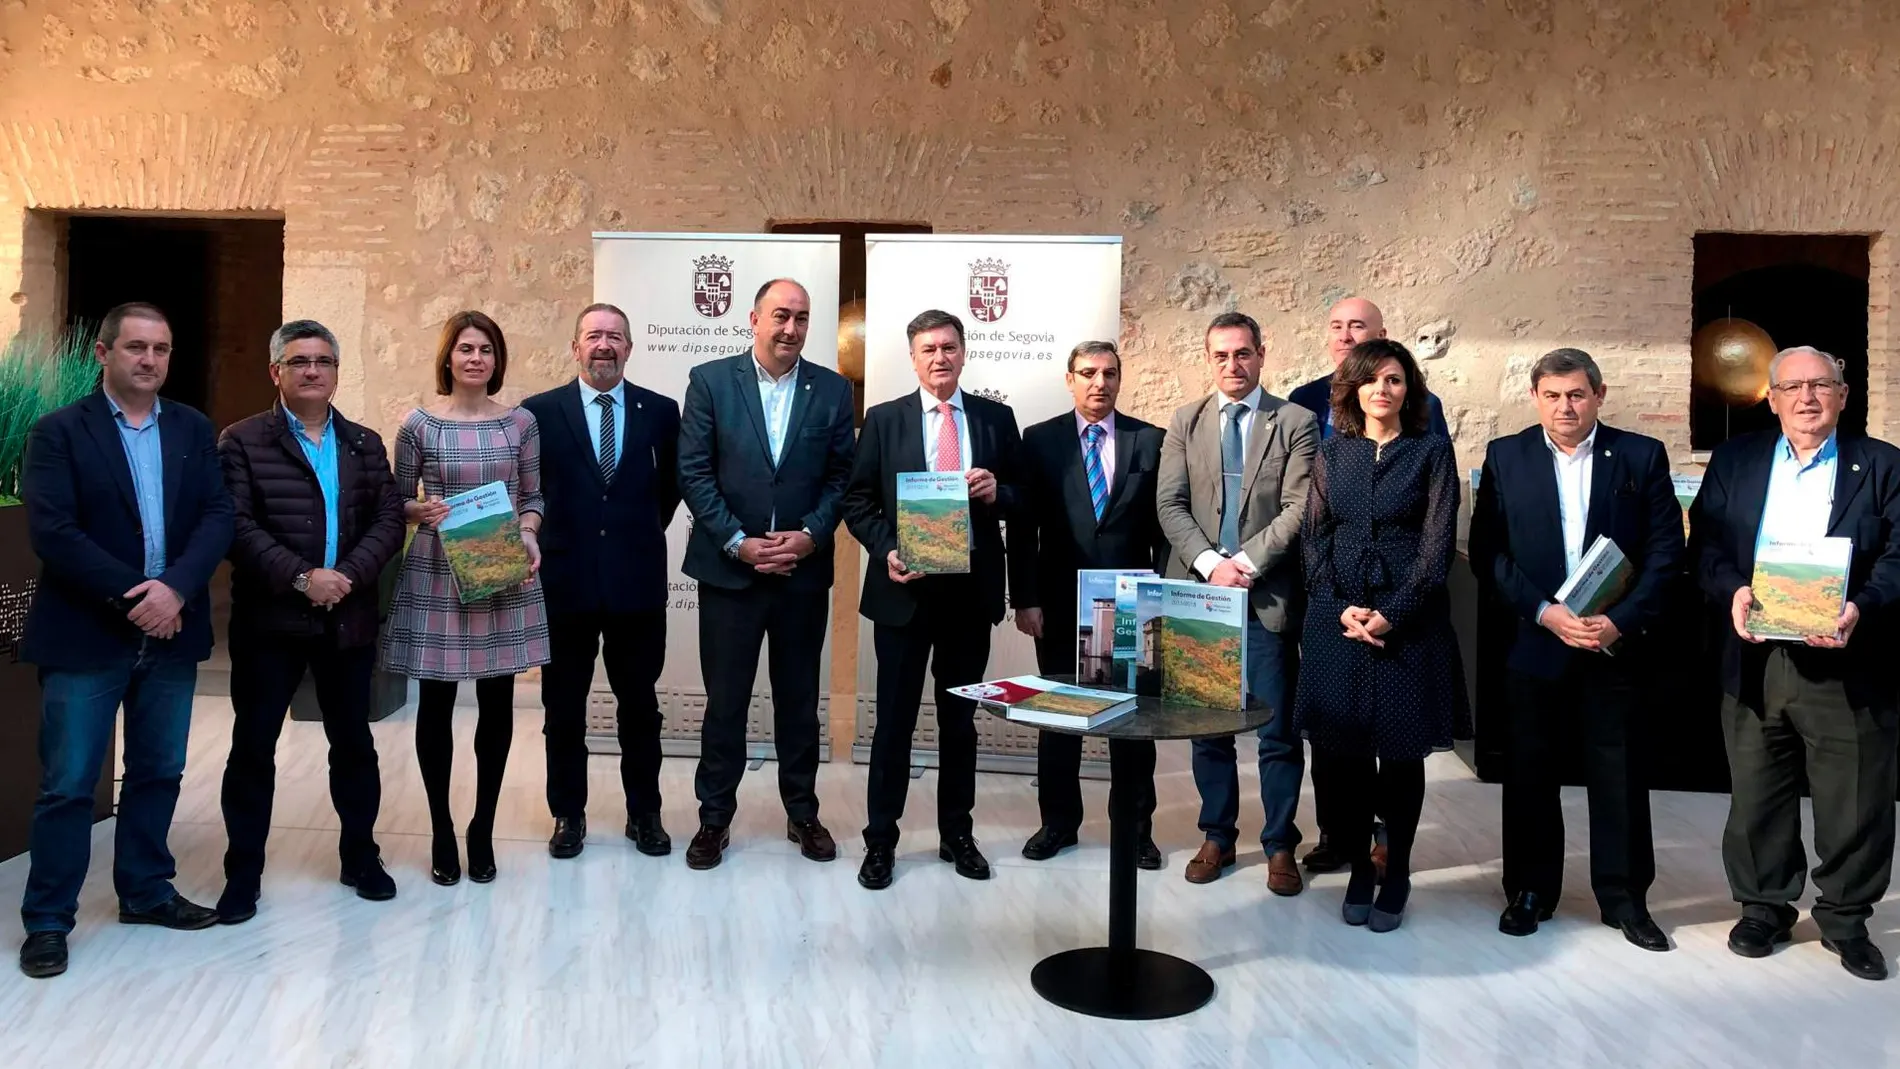 Foto de familia del presidente de la Diputación de Segovia, Francisco Vázquez, con los miembros de su equipo